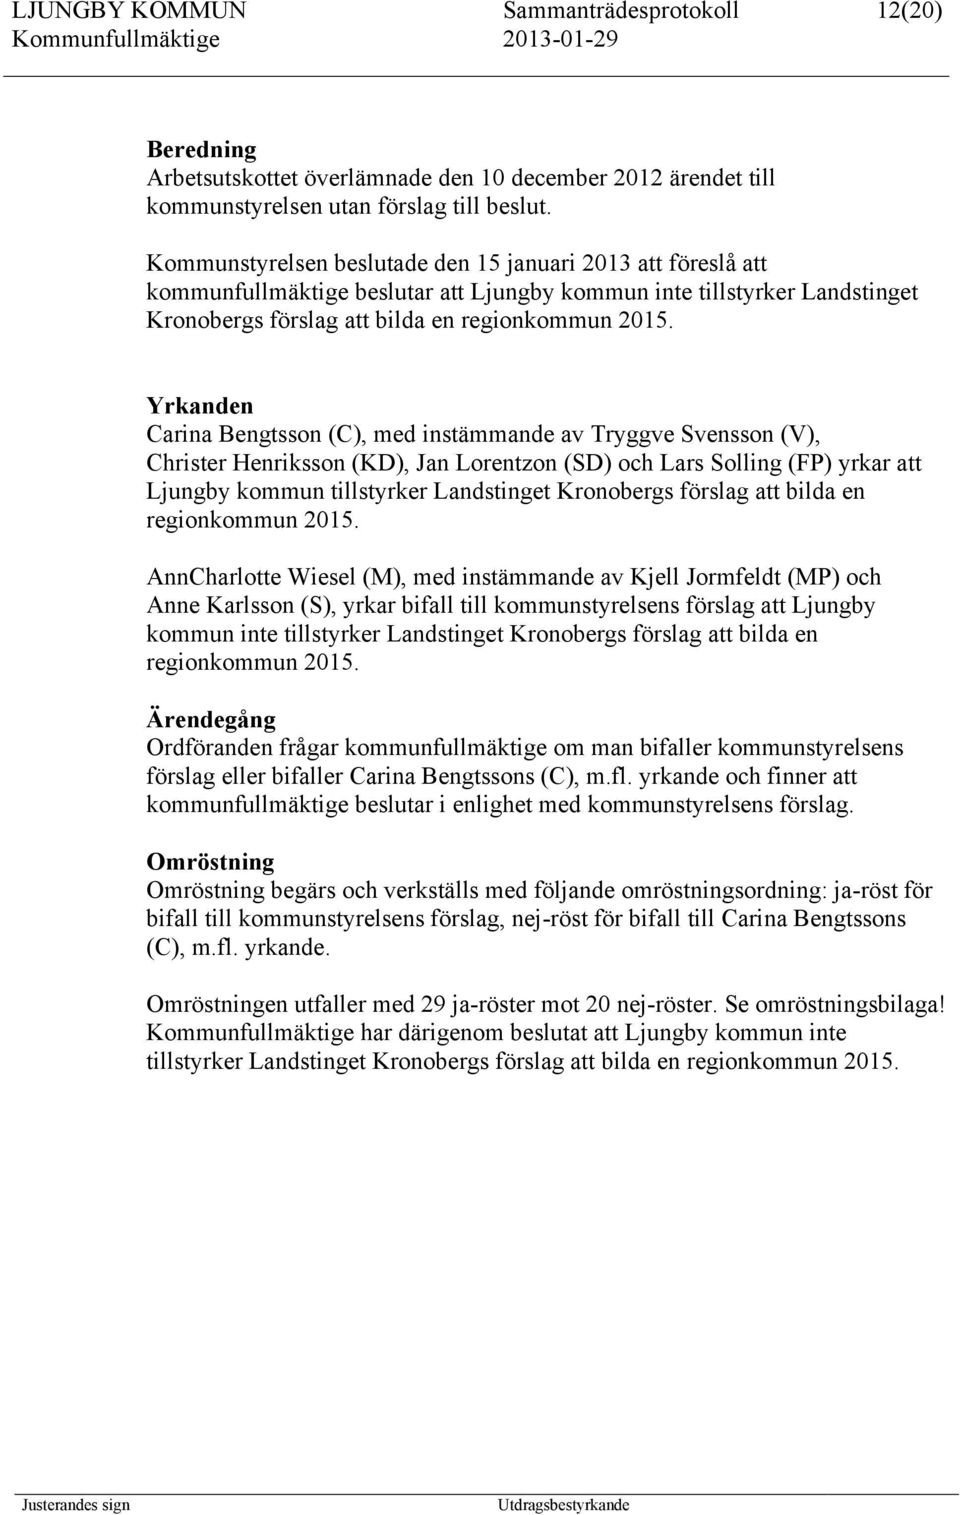 Yrkanden Carina Bengtsson (C), med instämmande av Tryggve Svensson (V), Christer Henriksson (KD), Jan Lorentzon (SD) och Lars Solling (FP) yrkar att Ljungby kommun tillstyrker Landstinget Kronobergs